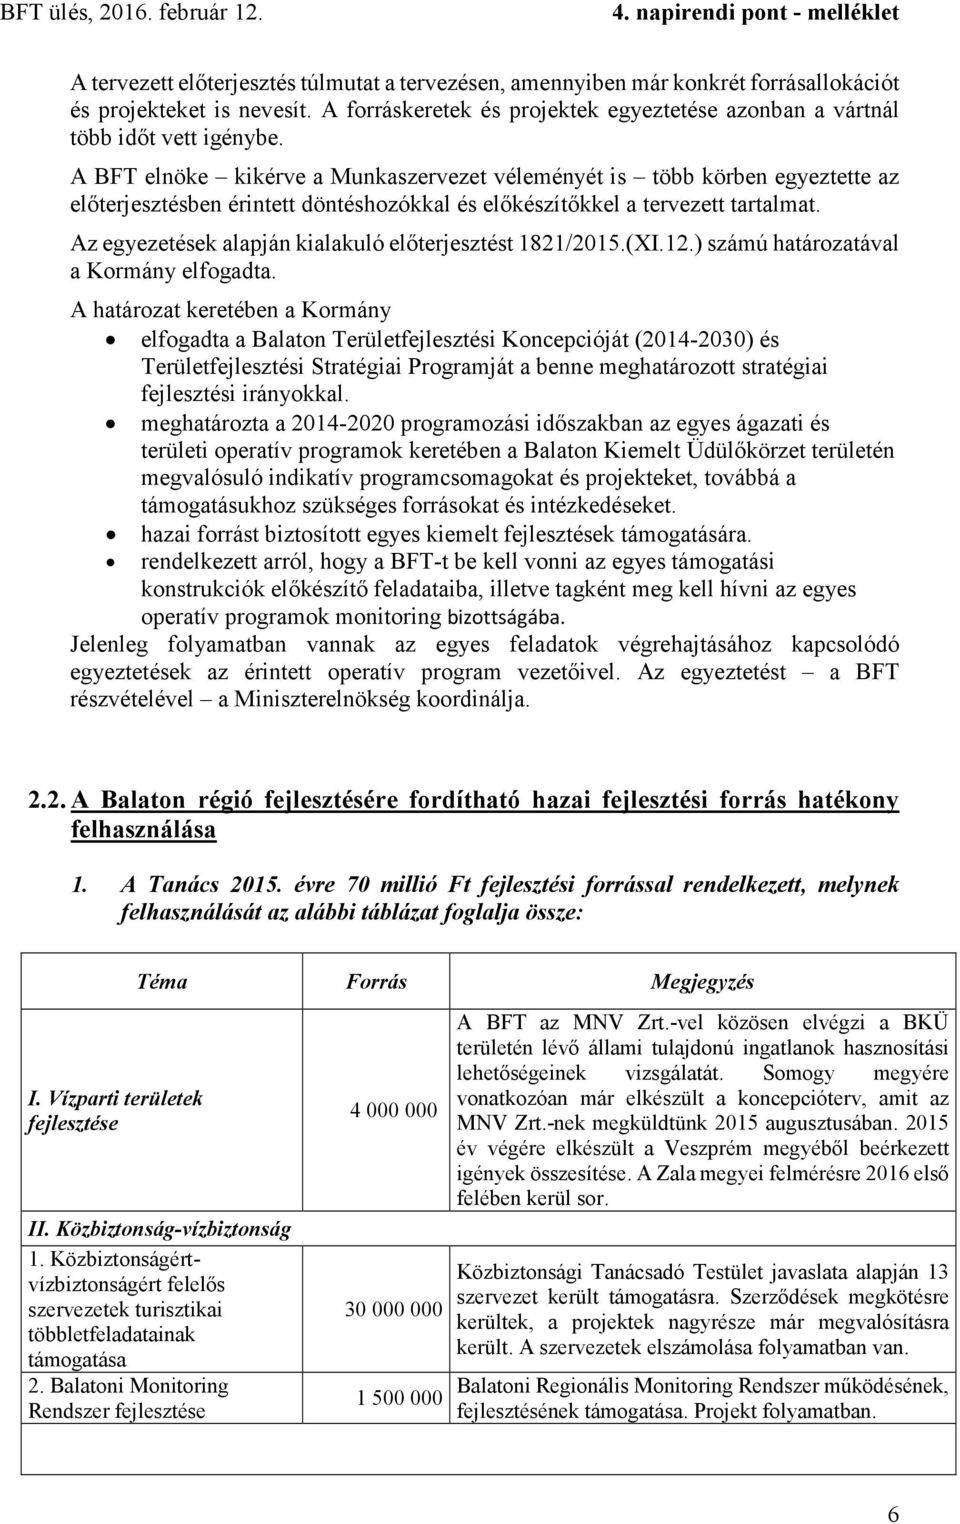 Az egyezetések alapján kialakuló előterjesztést 1821/2015.(XI.12.) számú határozatával a Kormány elfogadta.